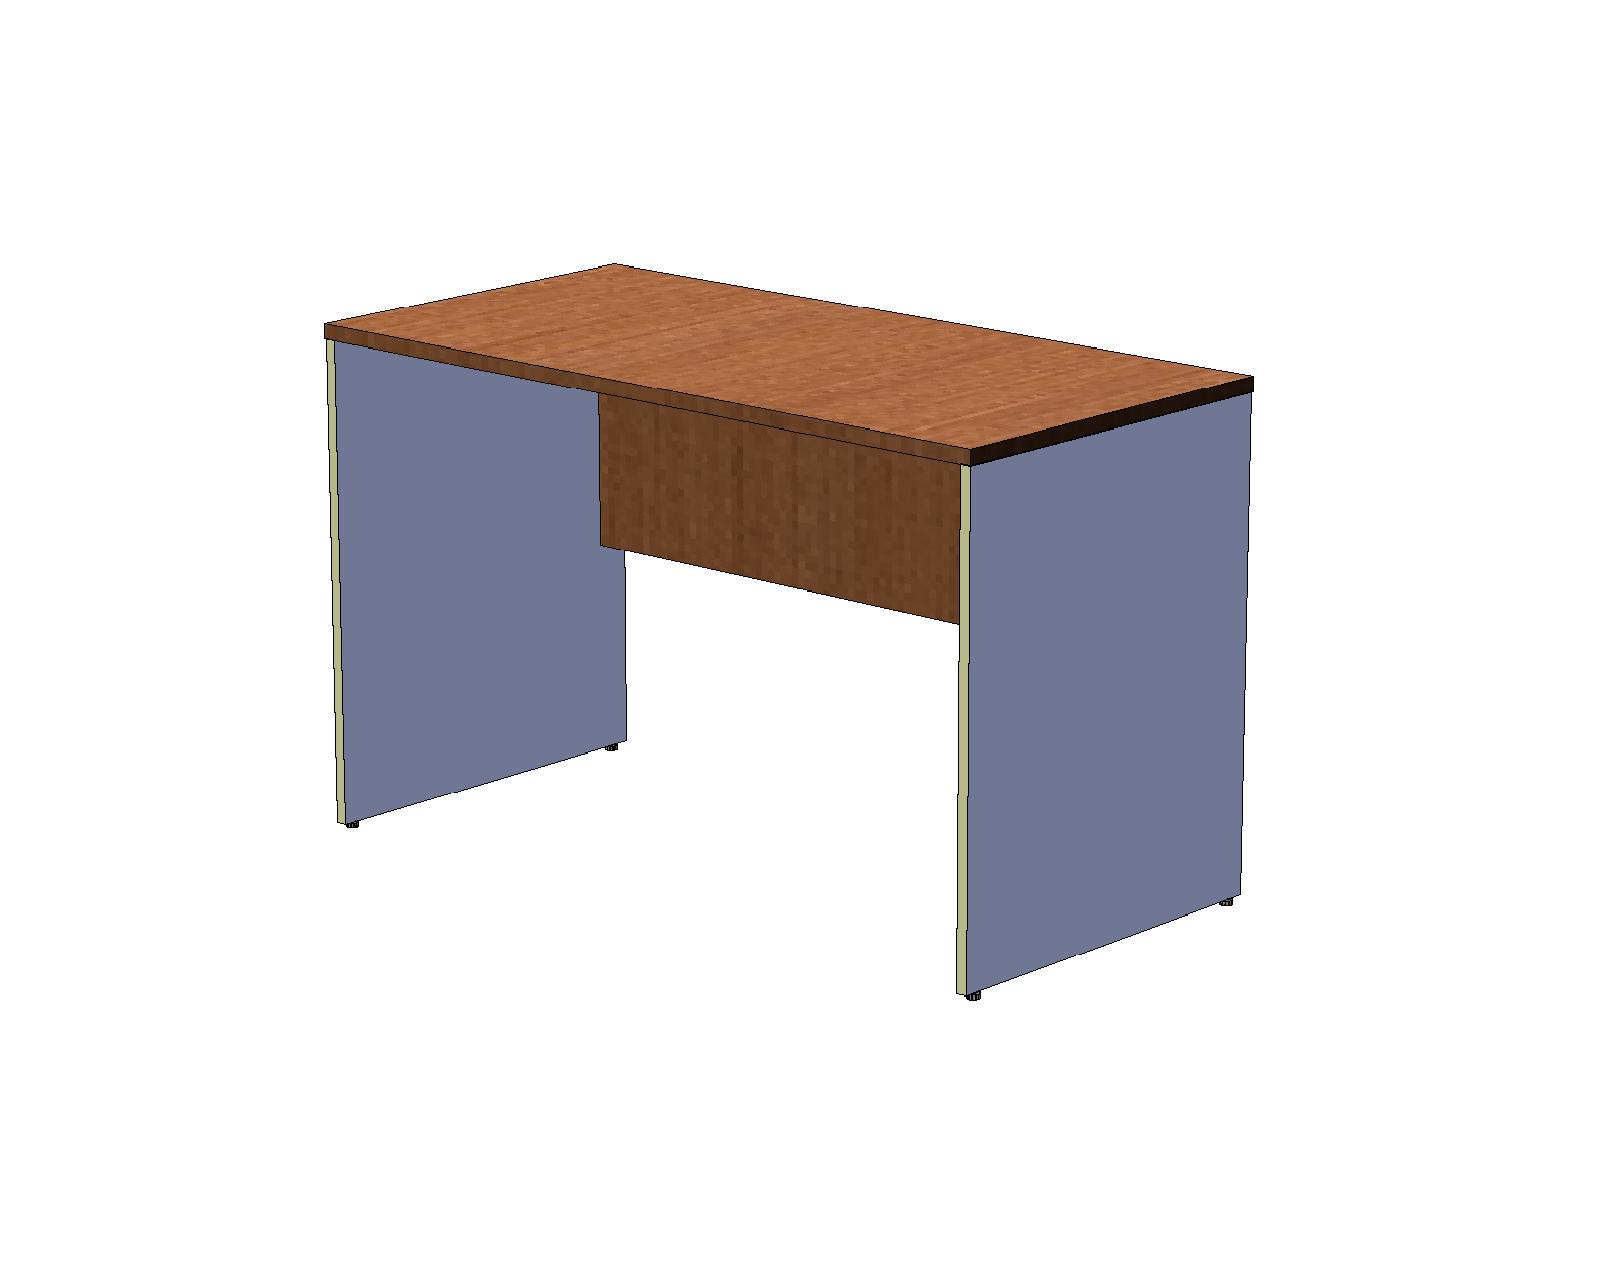 Офисный стол шир. 60 см на панельном каркасе 120 см, вишня оксфорд/серый A16.1132/CH10